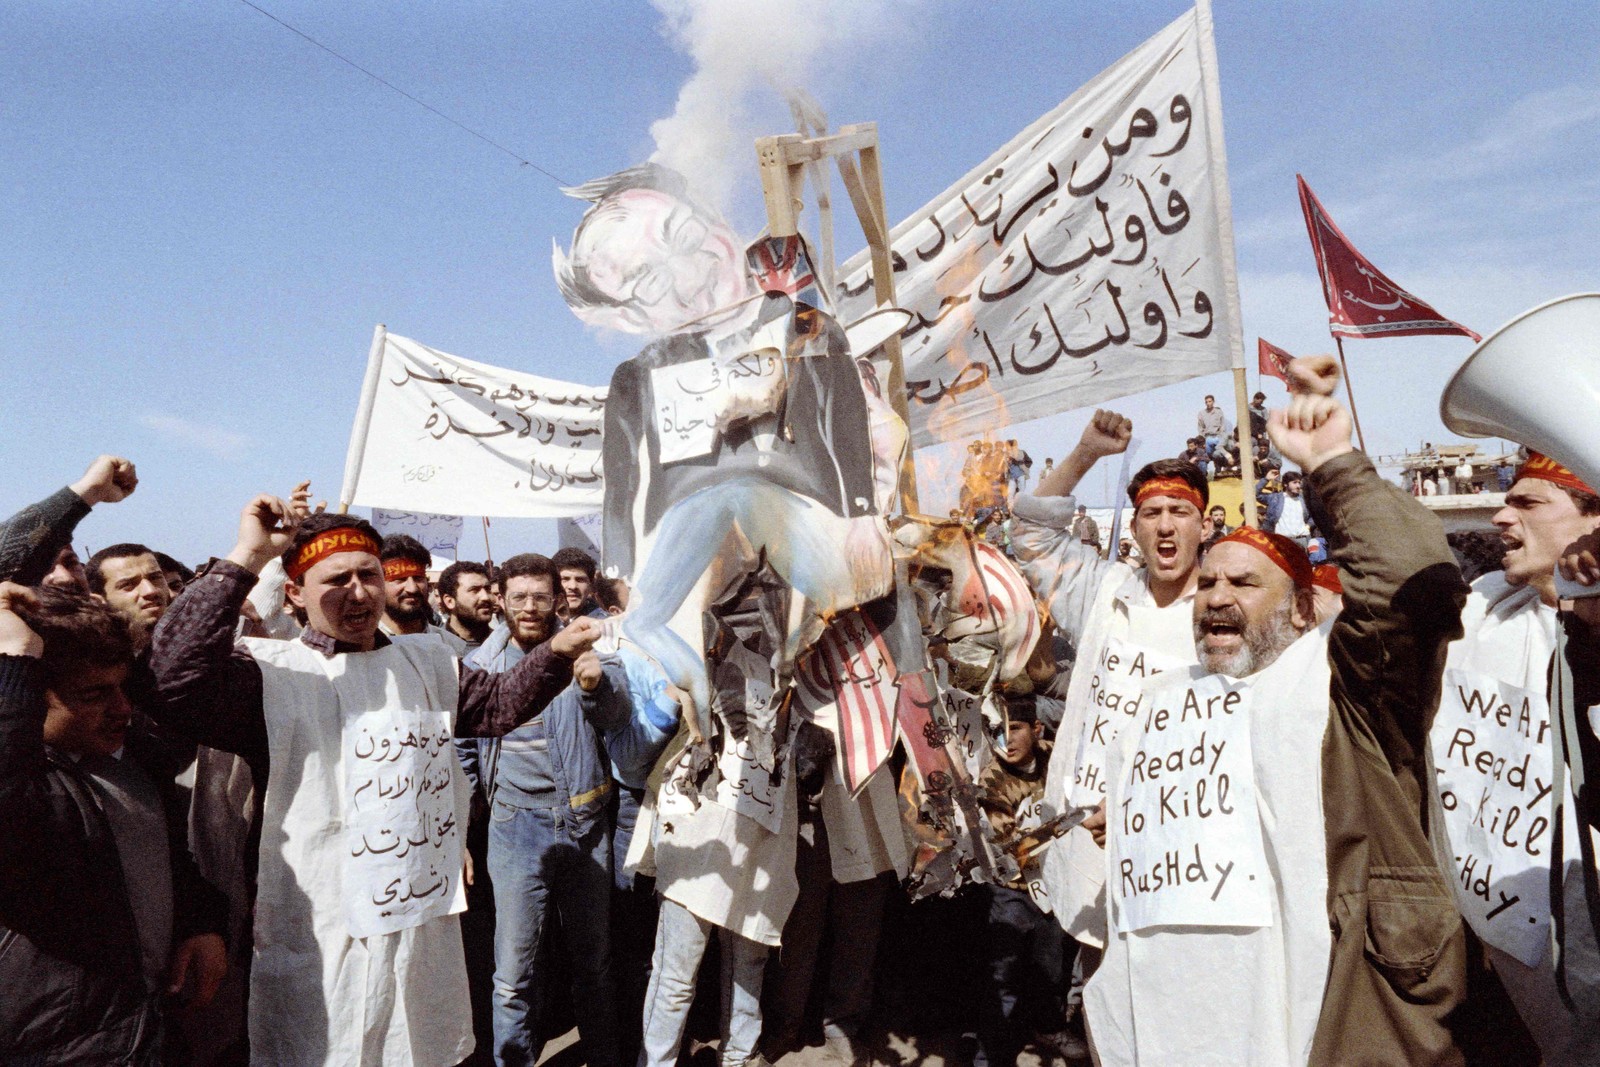 Fundamentalistas pró-iranianos do Hezbollah queimam uma efígie do escritorSalman Rushdie. Ele foi acusado de blasfêmia por seu livro "Versos Satânicos" — Foto: NABIL ISMAIL / AFP - 26/02/1989